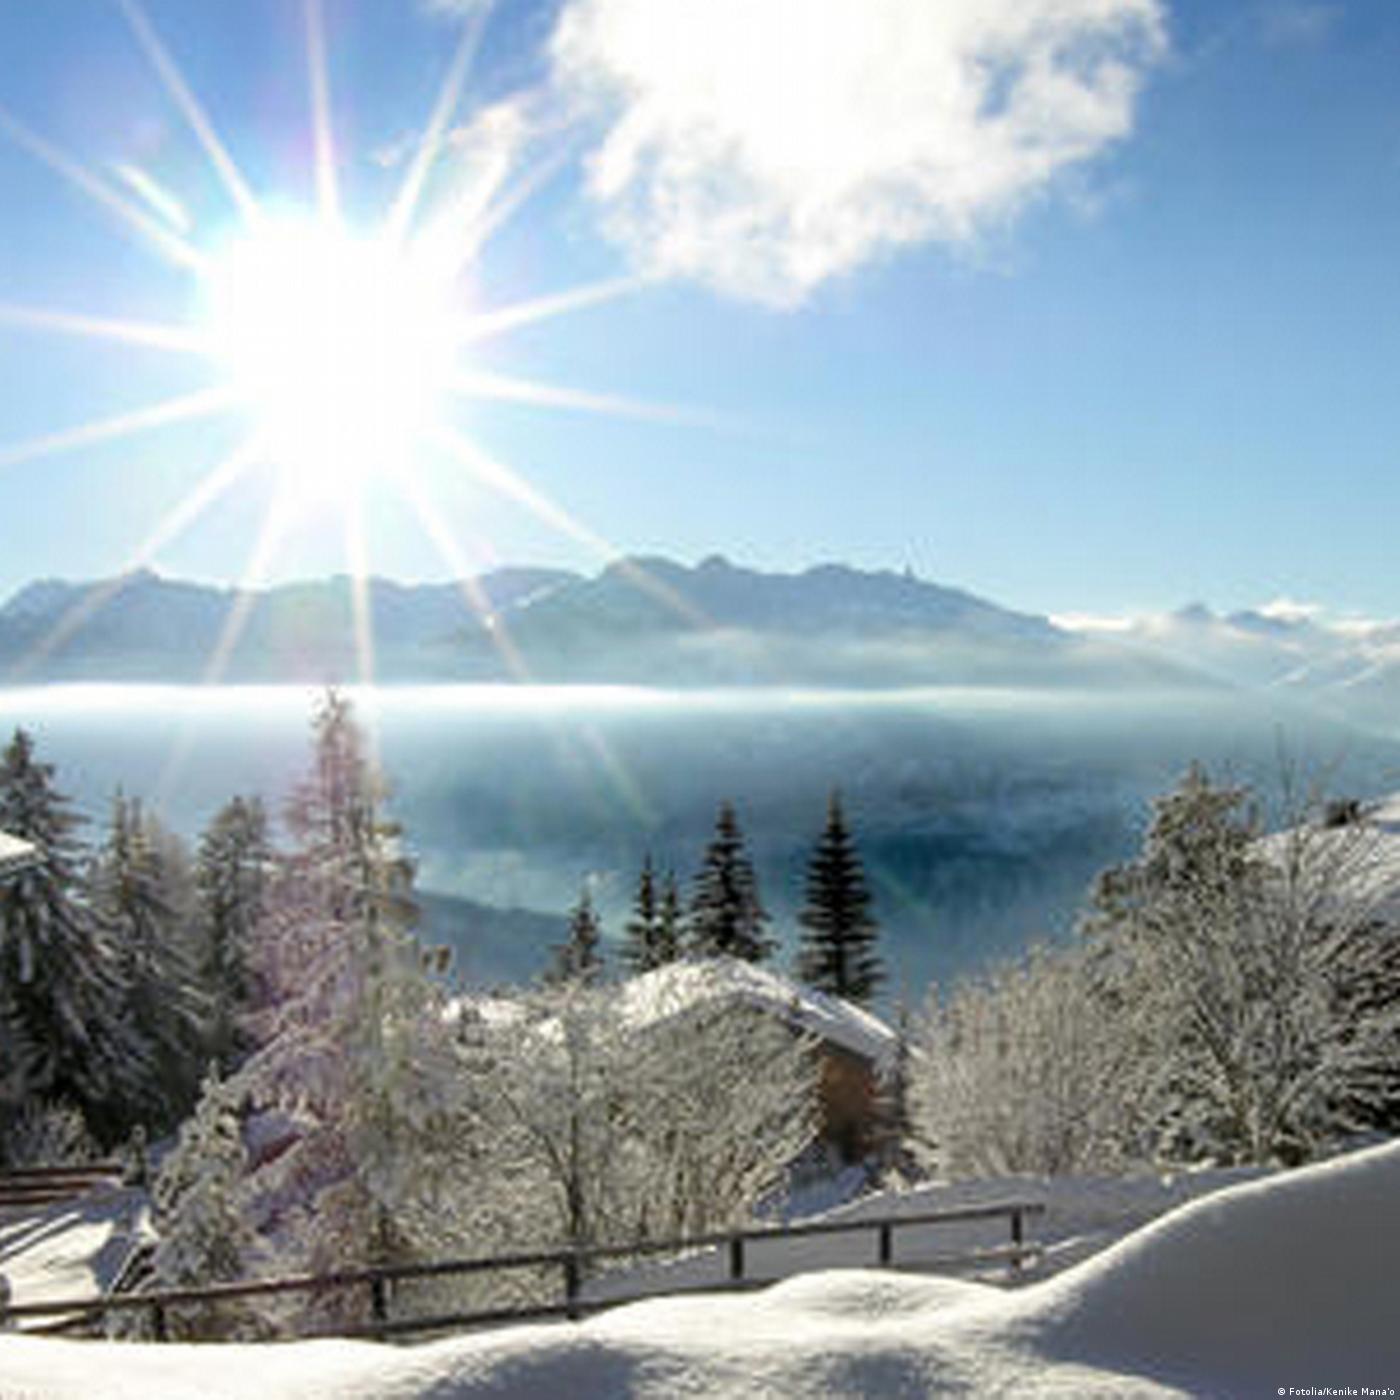 Switzerland: Will Luxury Tourism destroy the Alps?